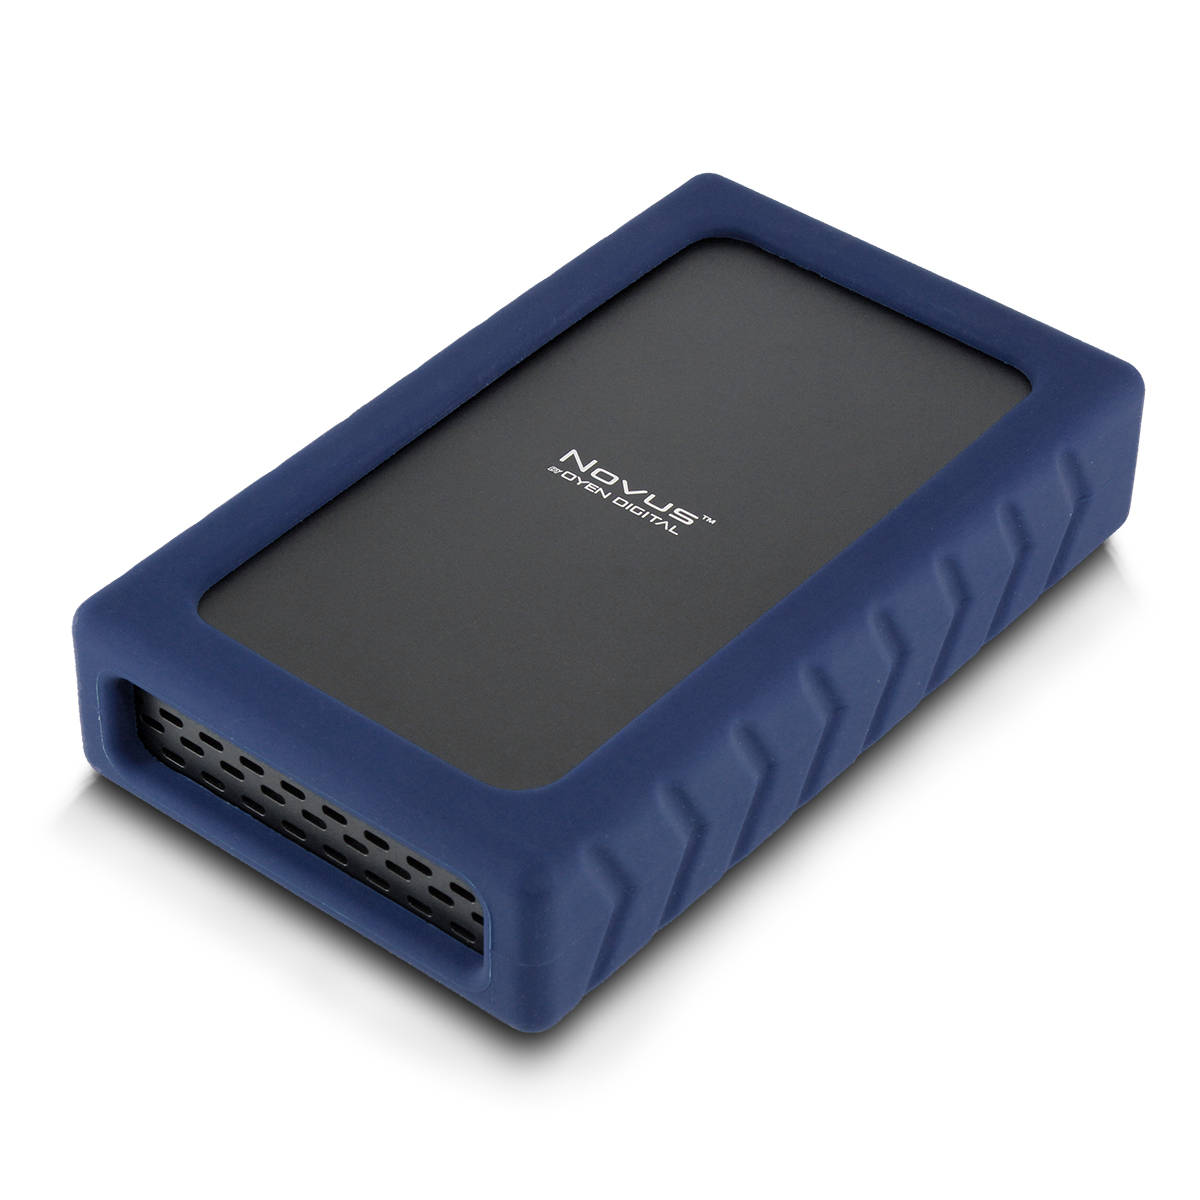 Fodgænger Blank Uredelighed Oyen Digital: Novus USB-C Rugged 3.5-inch External Hard Drive Enclosure